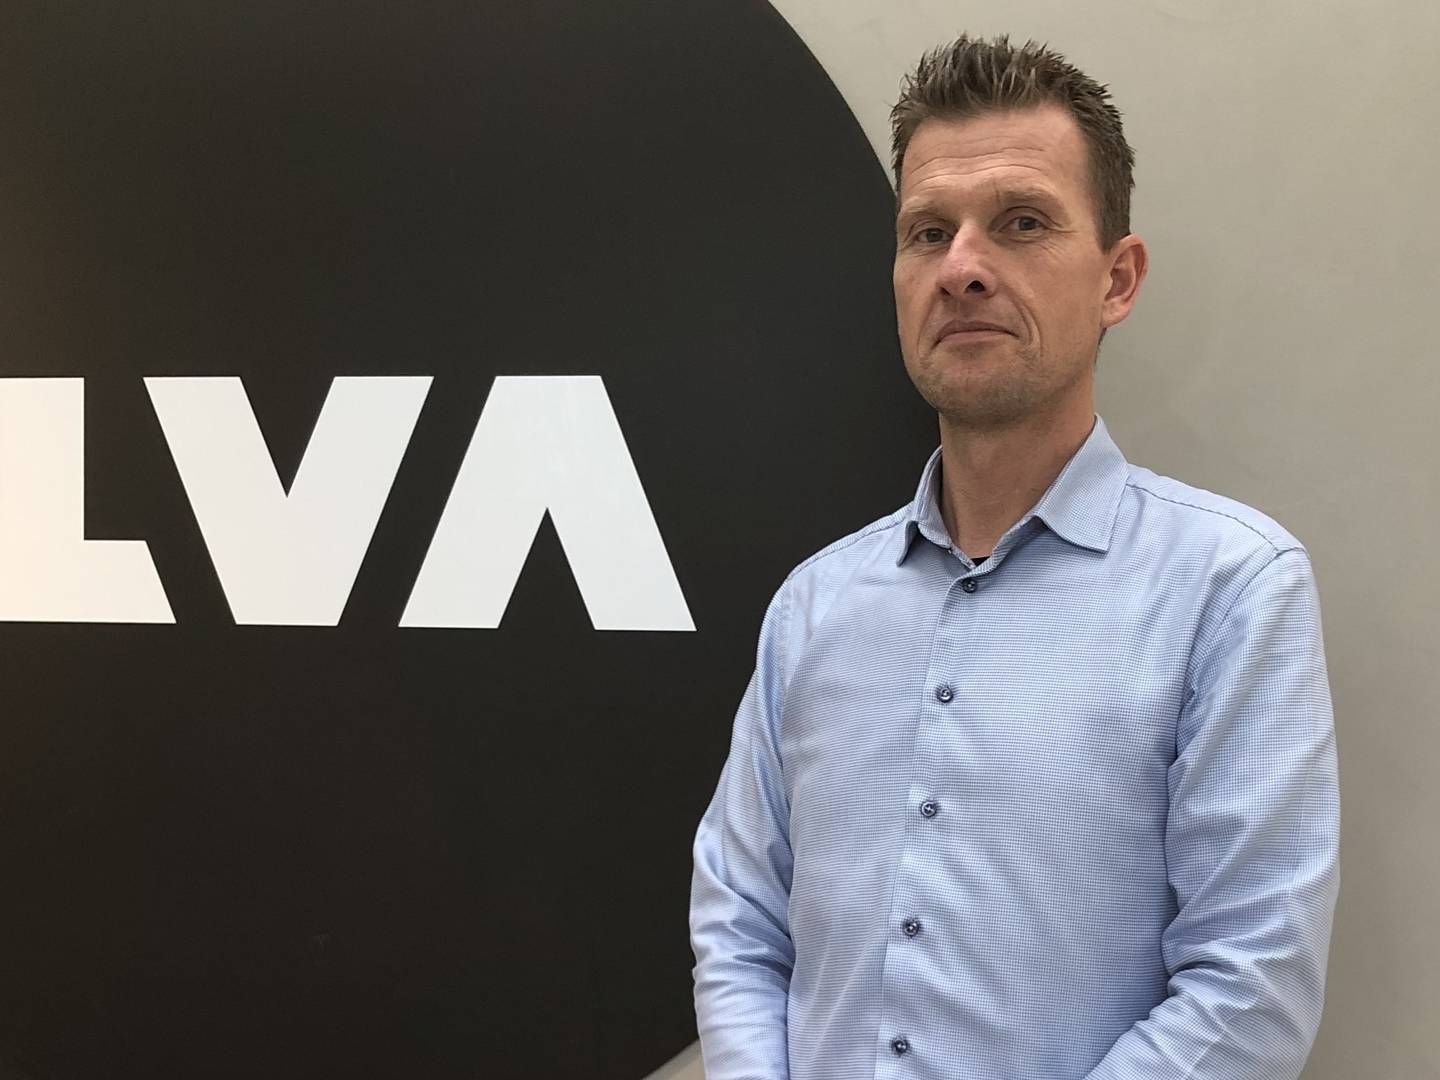 Ilva-direktør Martin Hallund udtalte i retten, at han frygtede at blive fyret, såfremt han ville blive dømt i landsretten. | Foto: PR/Ilva